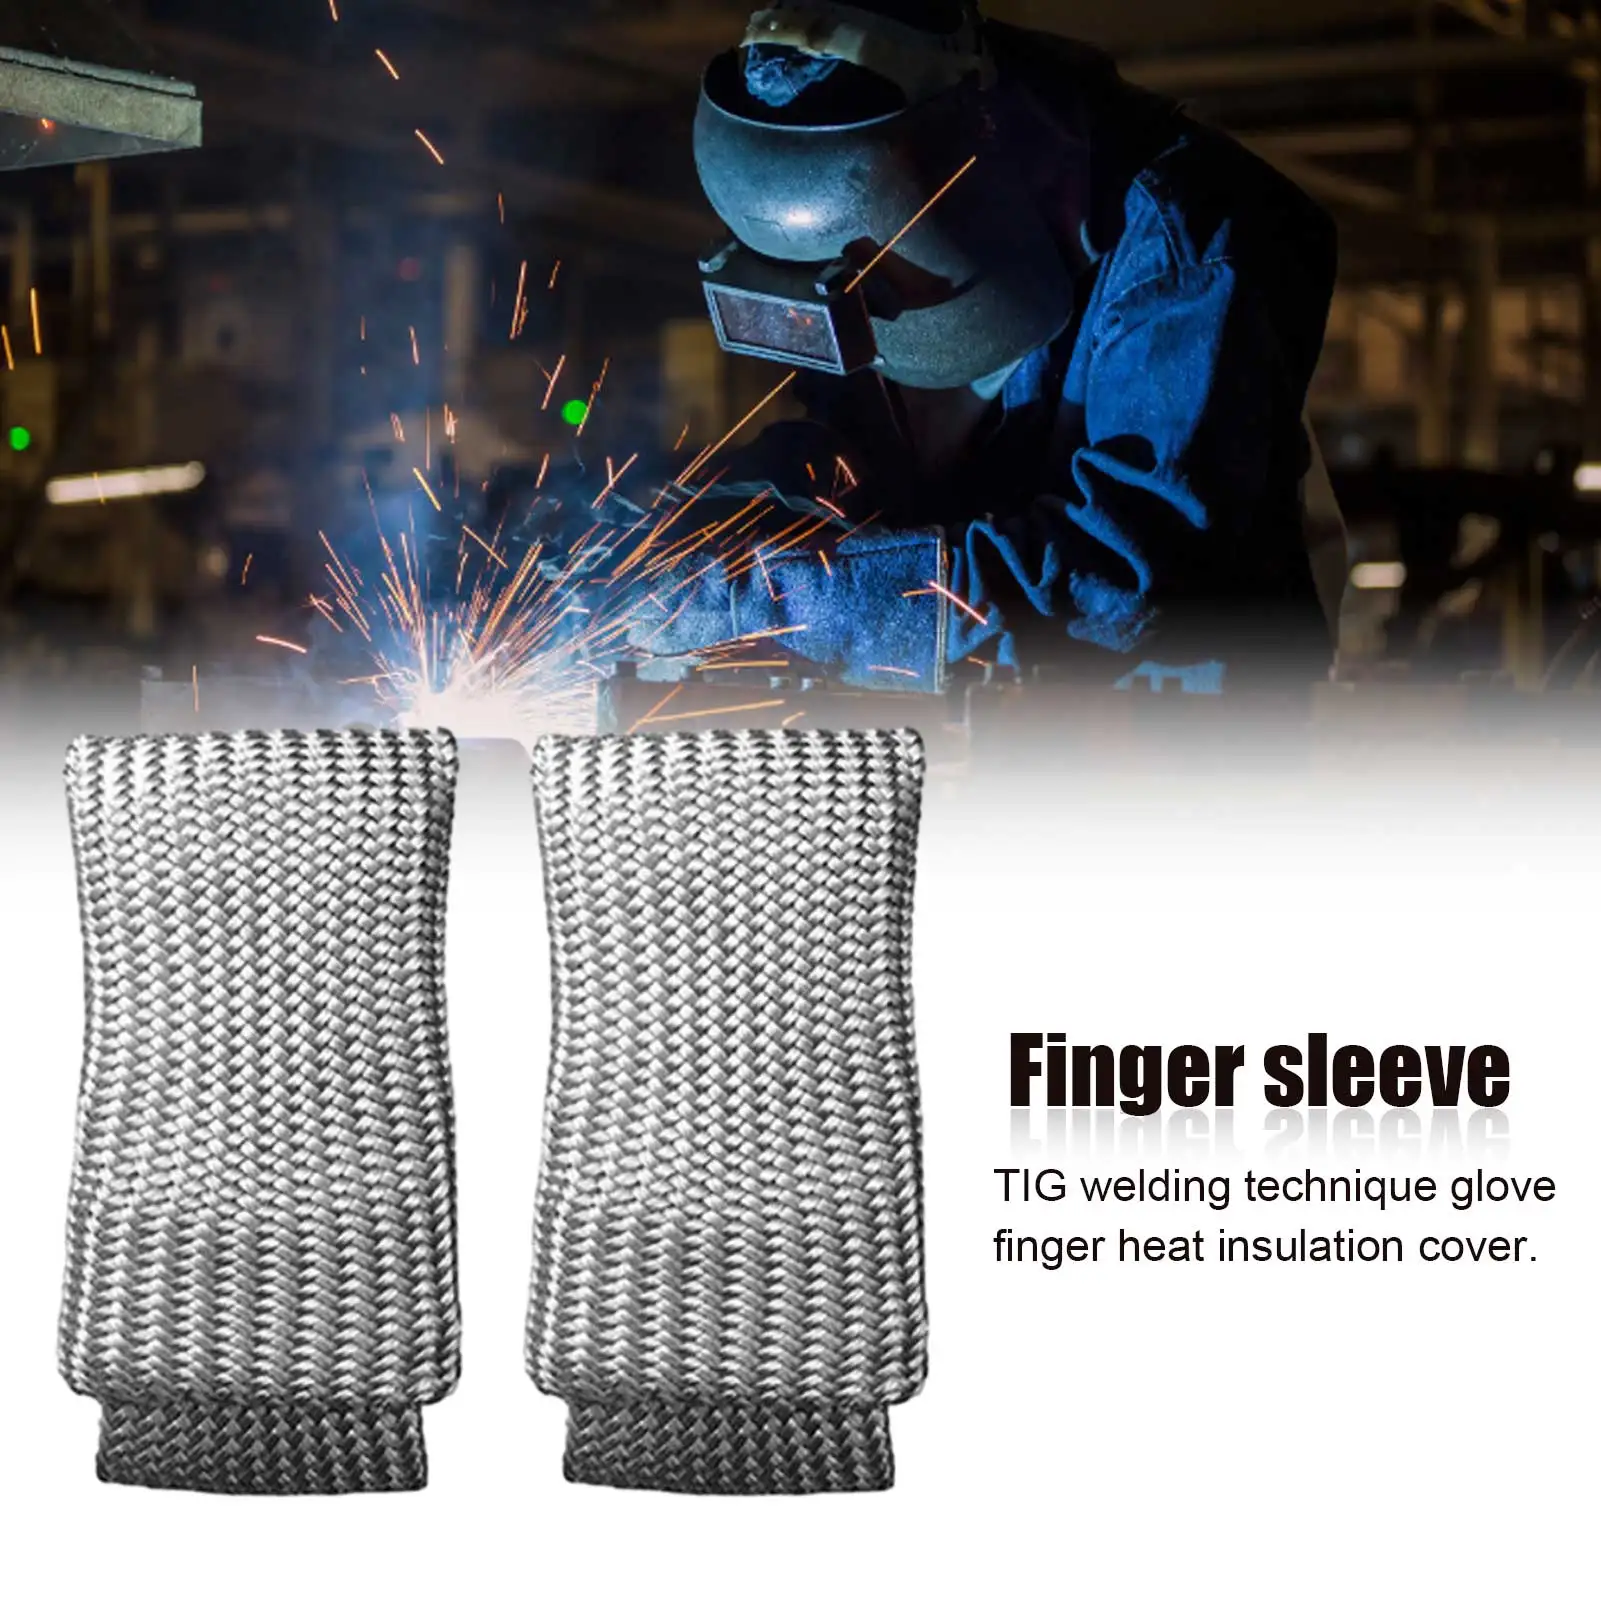 2 adet kaynak ipuçları hileler Tig dayanıklı parmak ısı kalkanı pottor ısı direnci koruyucu eldivenler yüksek sıcaklık yalıtımı